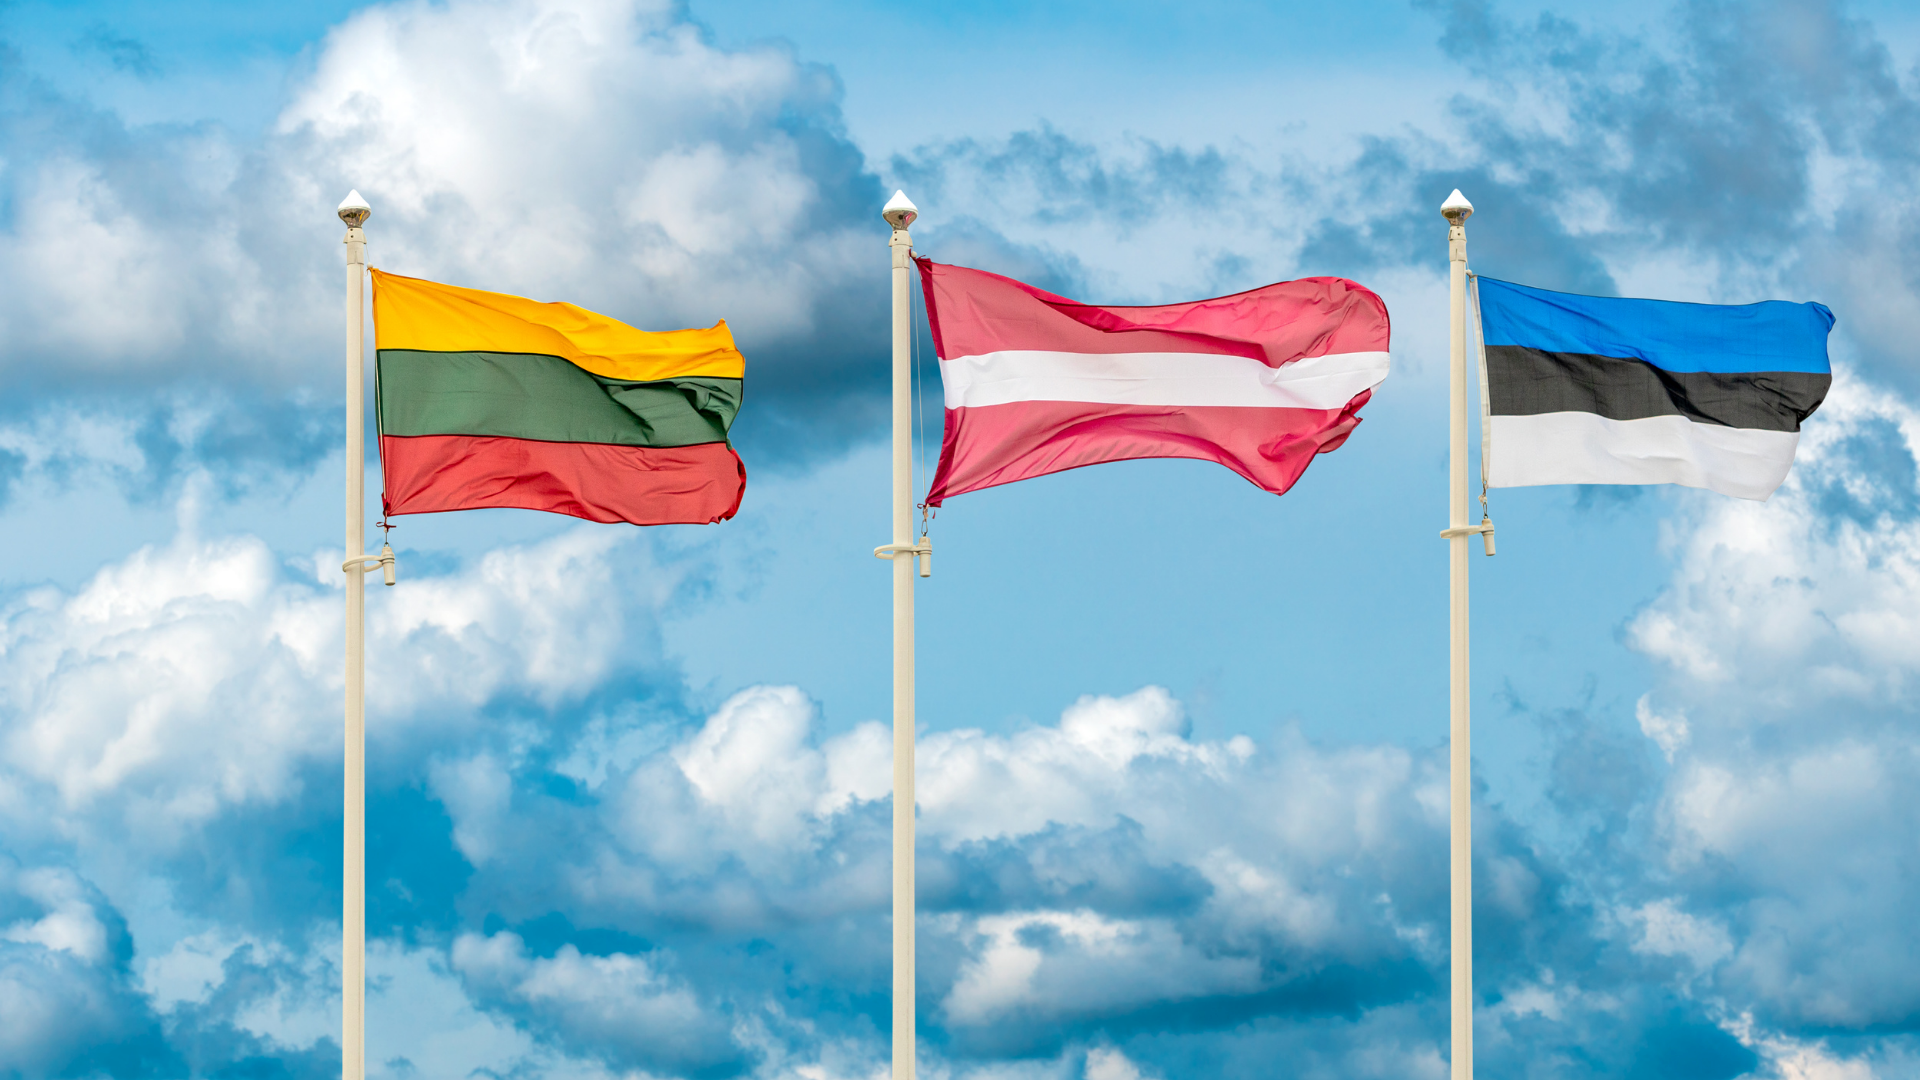 Балтийская конвенция. Флаг Латвии Литвы и Эстонии. Прибалтика Латвия Литва Эстония. Прибалтийские флаги Латвии Литвы Эстонии. Флаг Латвии и флаг Литвы.